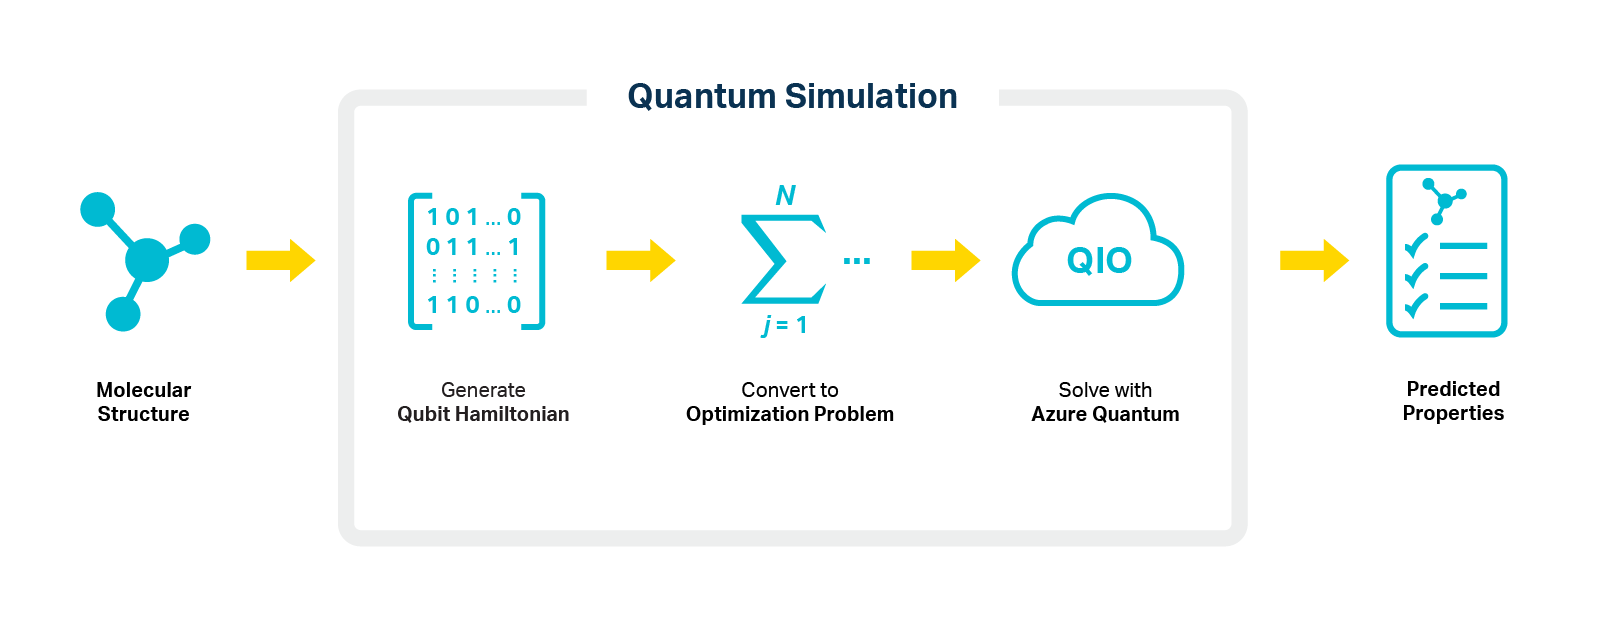 quantum simulation diagram